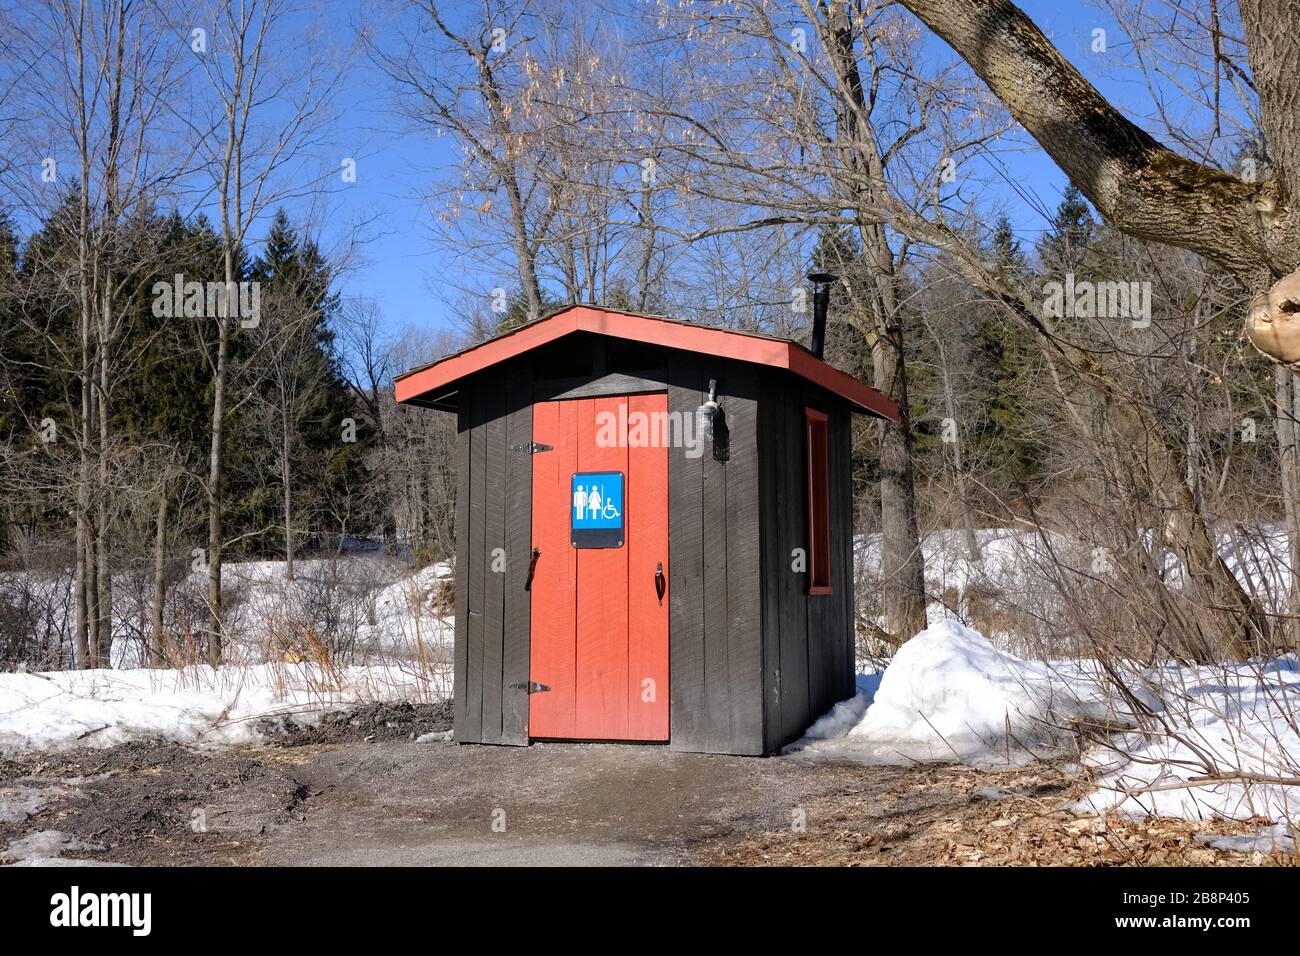 toilettes publiques non isexes (outhouse) très pratiques, rouges et brunes, au milieu d'un parc enneigé de Gatineau, Québec, Canada. Banque D'Images